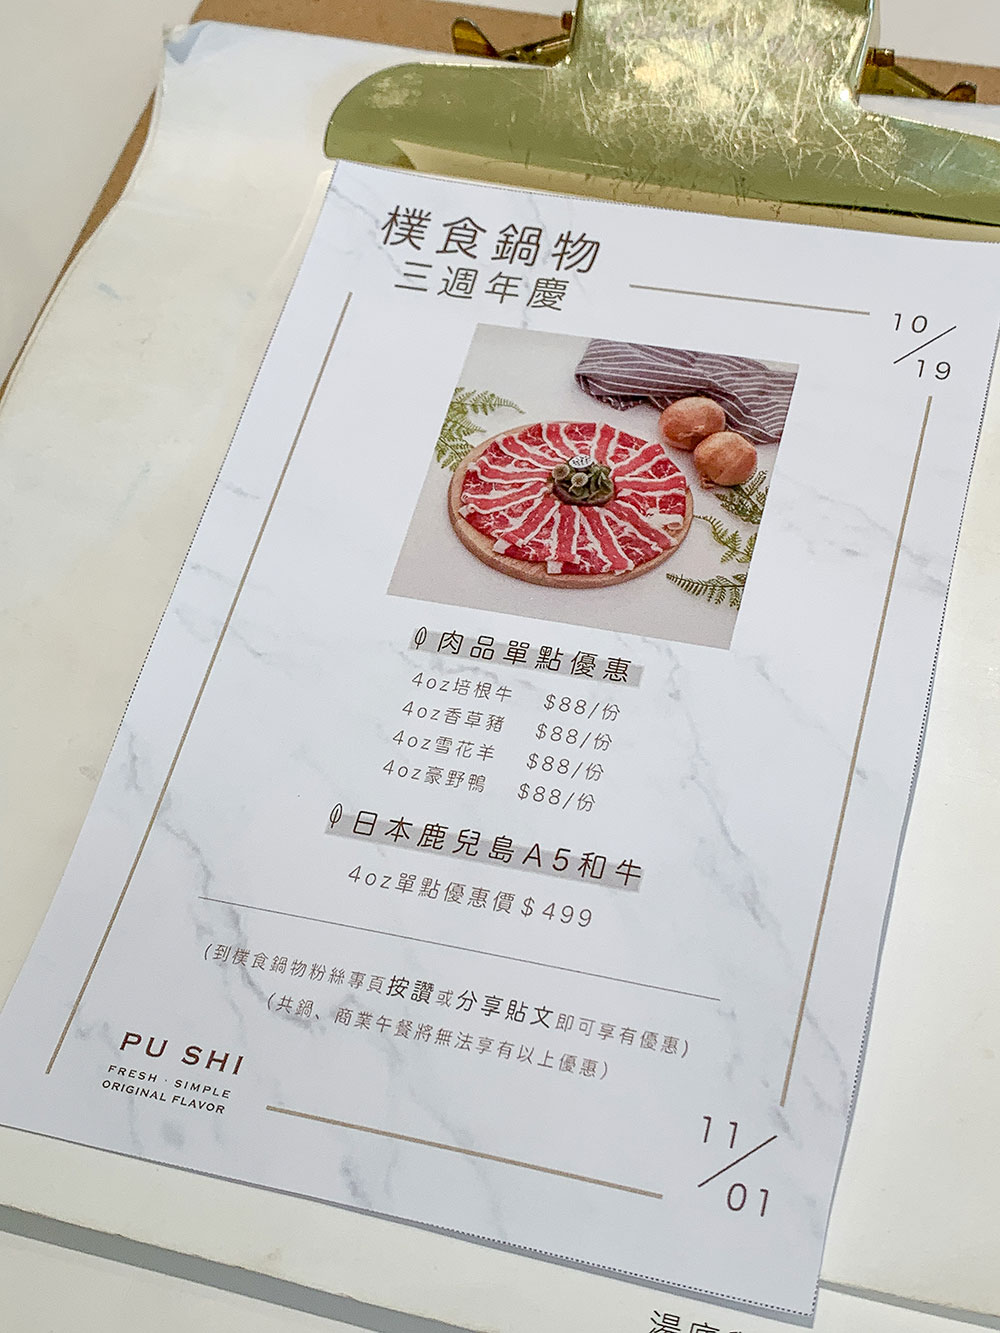 桃園-青埔-美食-樸食-鍋物-PU-SHI-小火鍋-菜單-menu